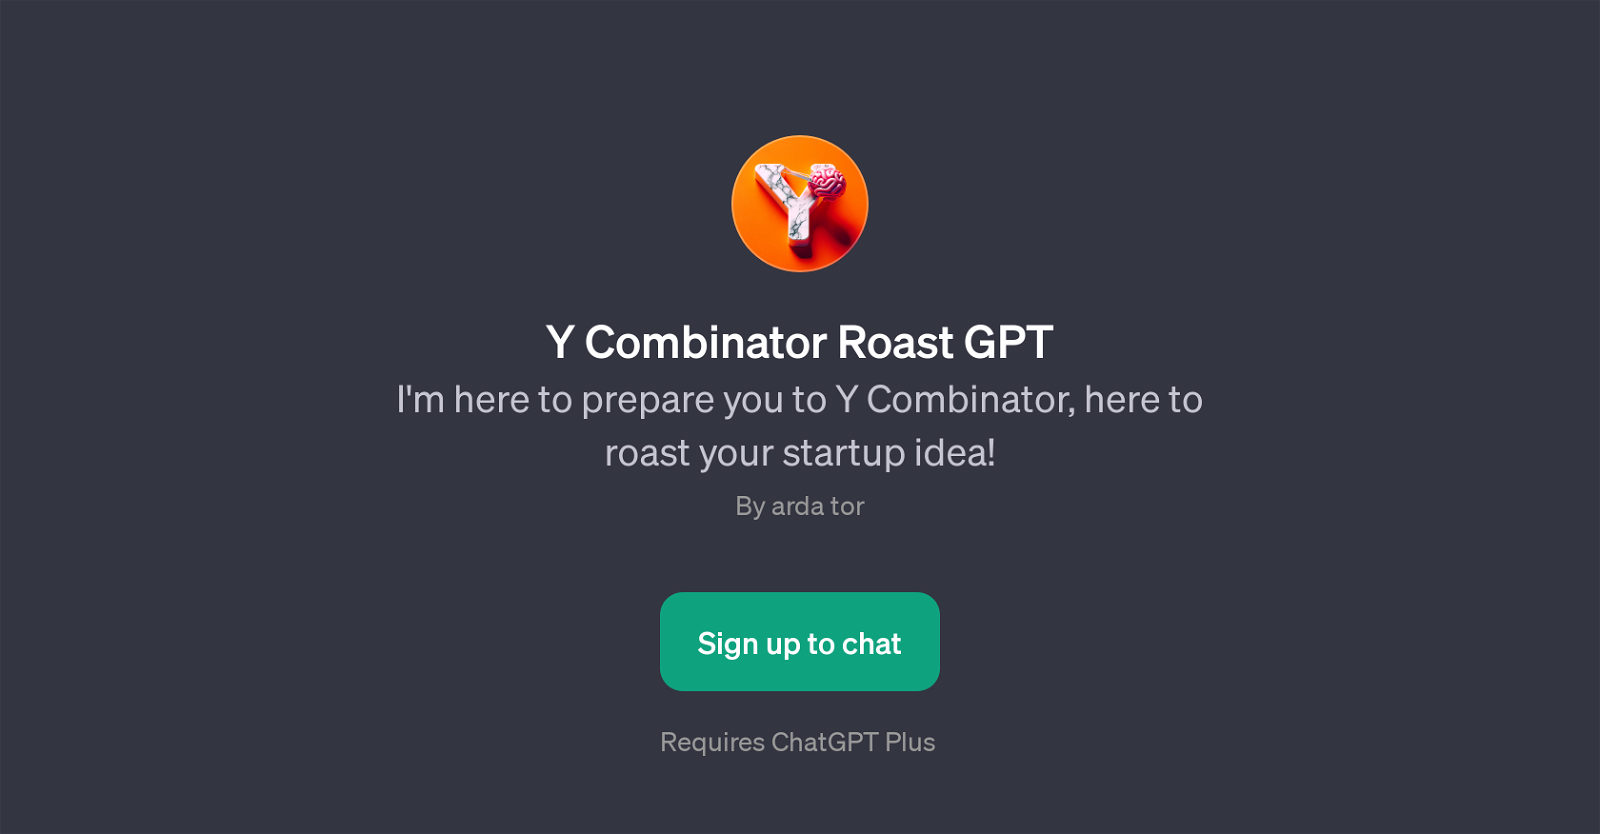 Y Combinator Roast GPT website